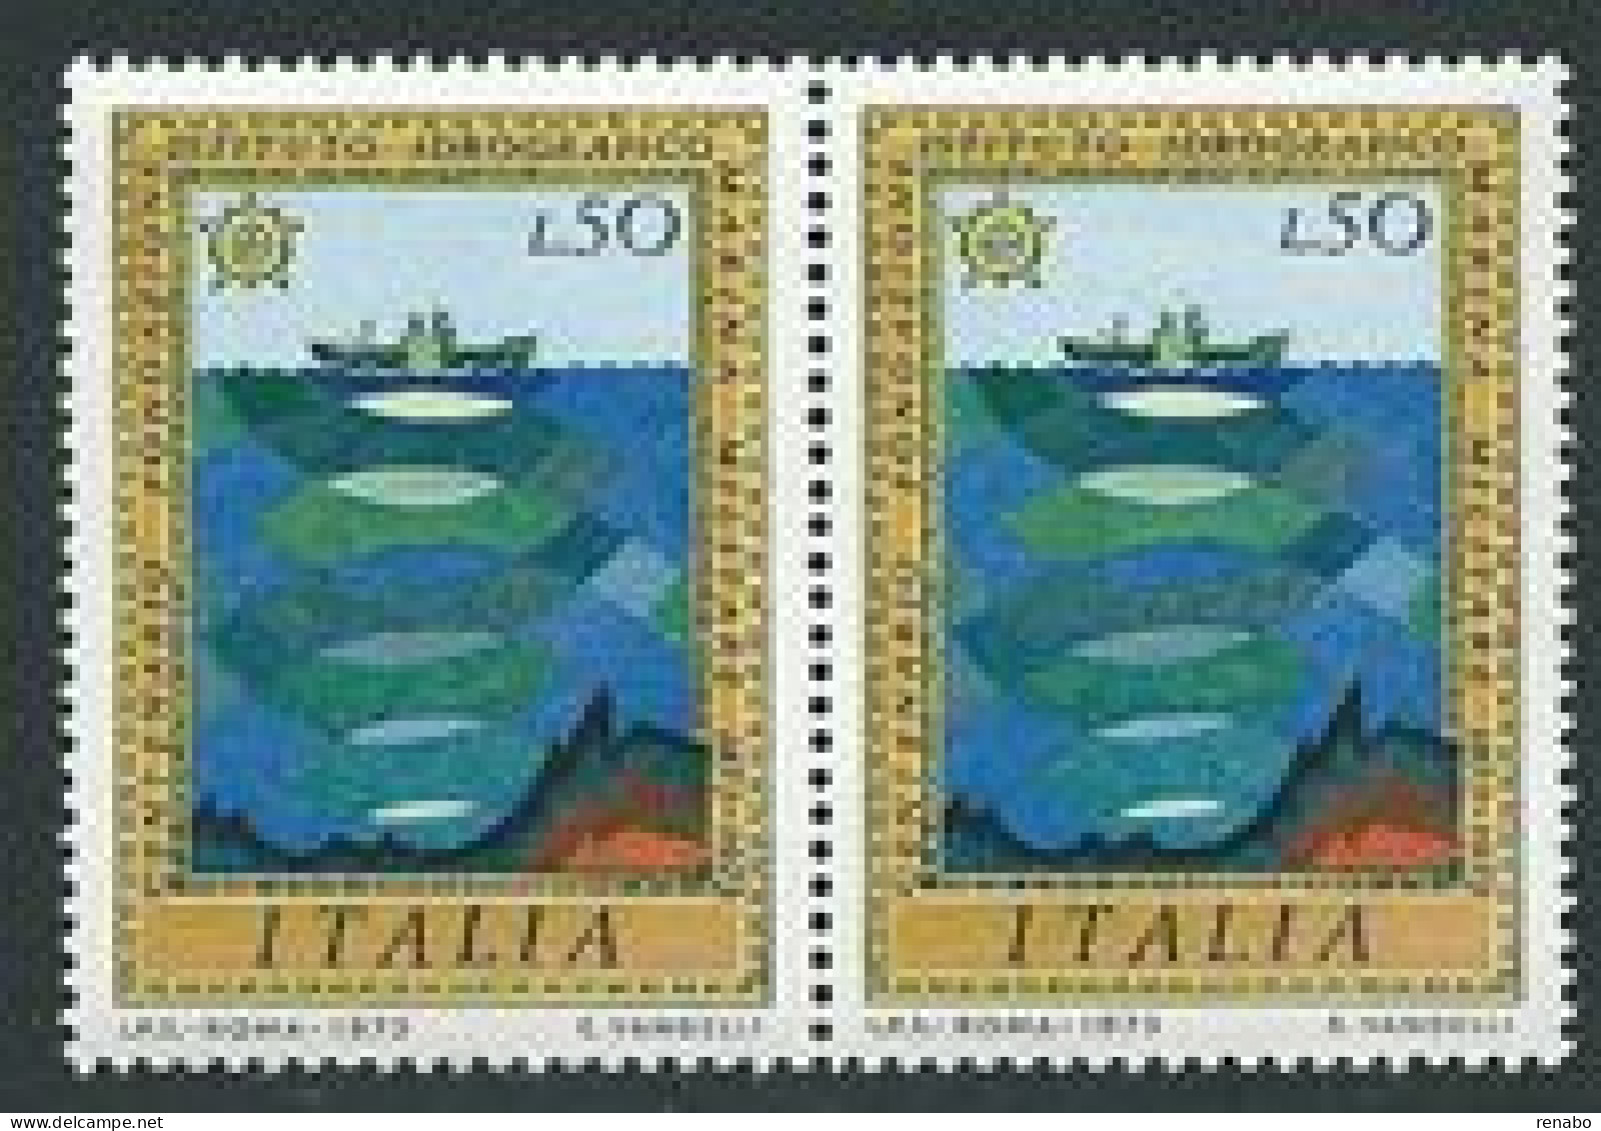 Italia 1973; Istituto Idrografico Della Marina Militare. Coppia. - 1971-80: Nieuw/plakker